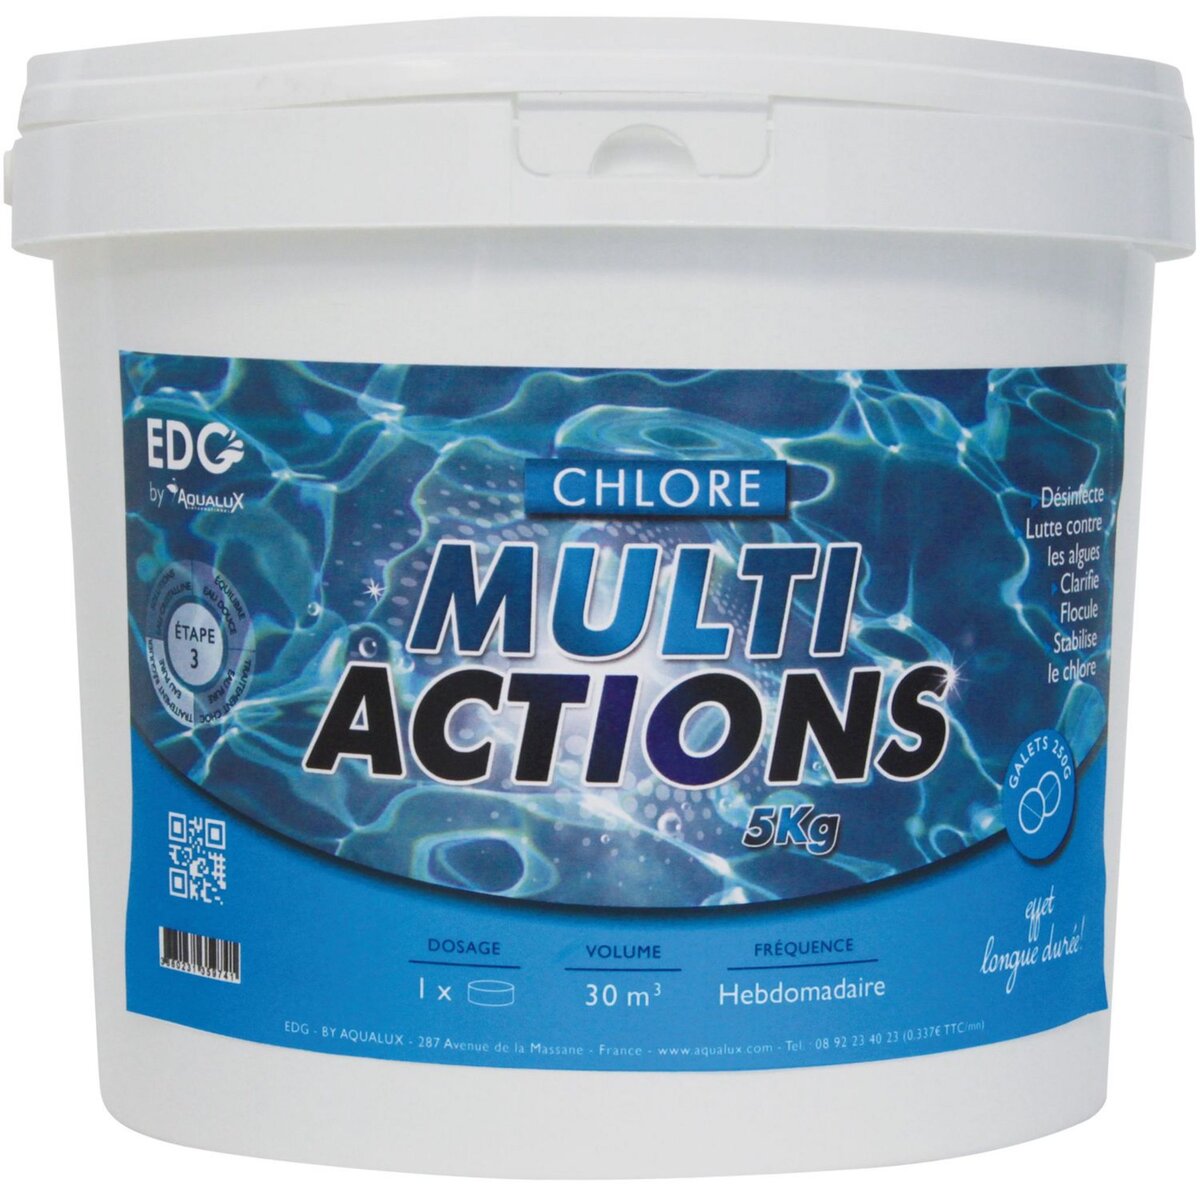 EDG By Aqualux Chlore multi actions galets 250g - Seau de 5 kg